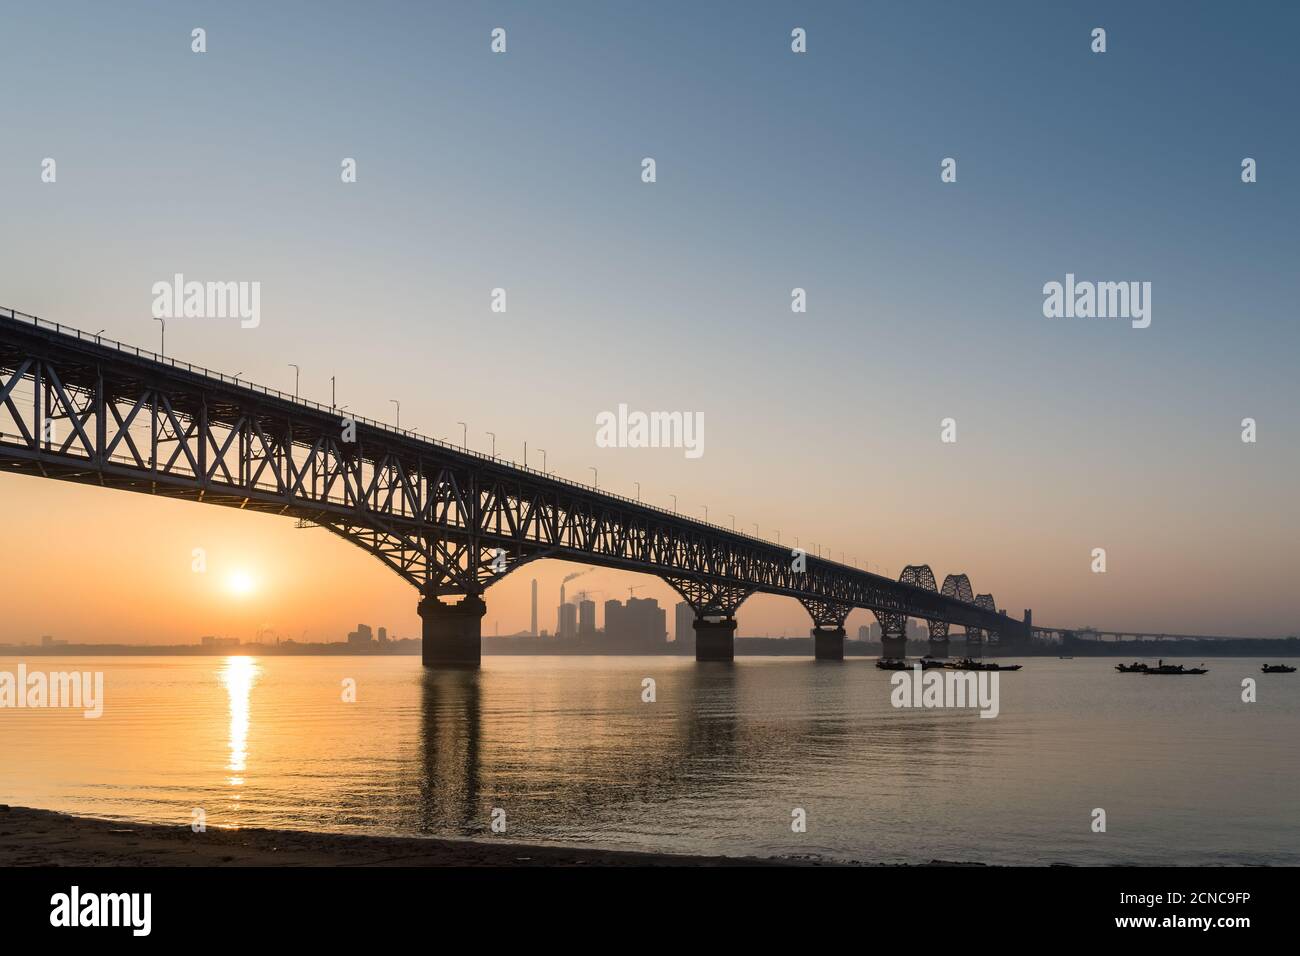 jiujiang yangtze river bridge in sunrise Stock Photo